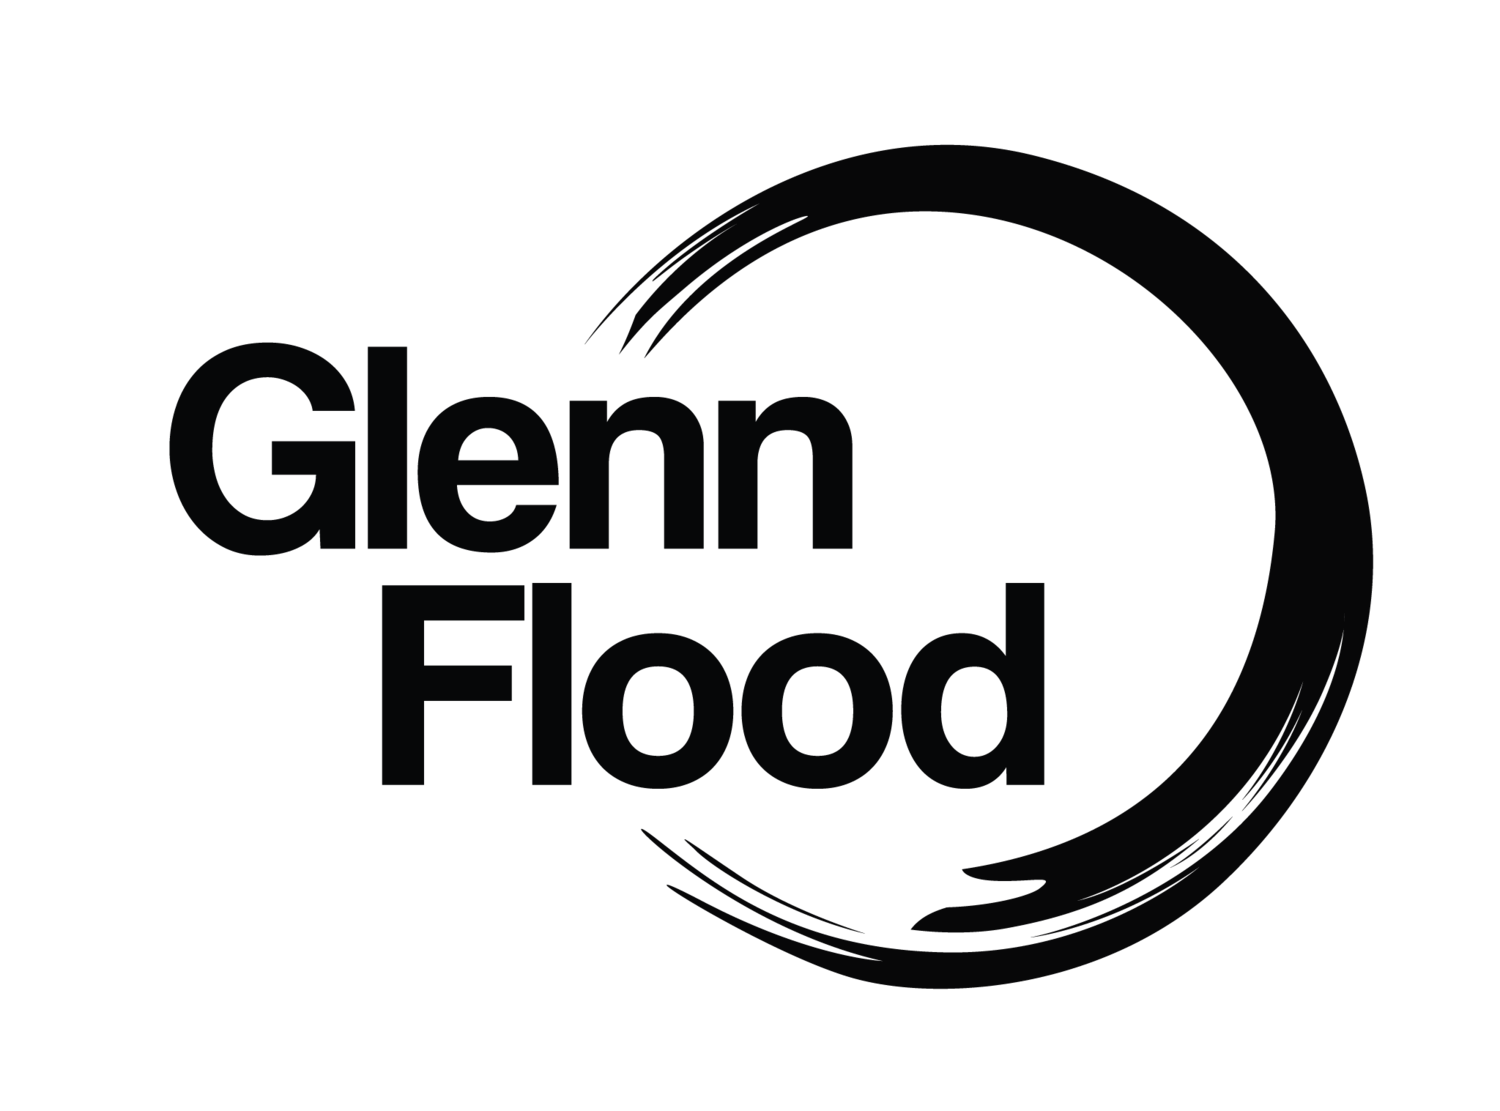 GLENN FLOOD